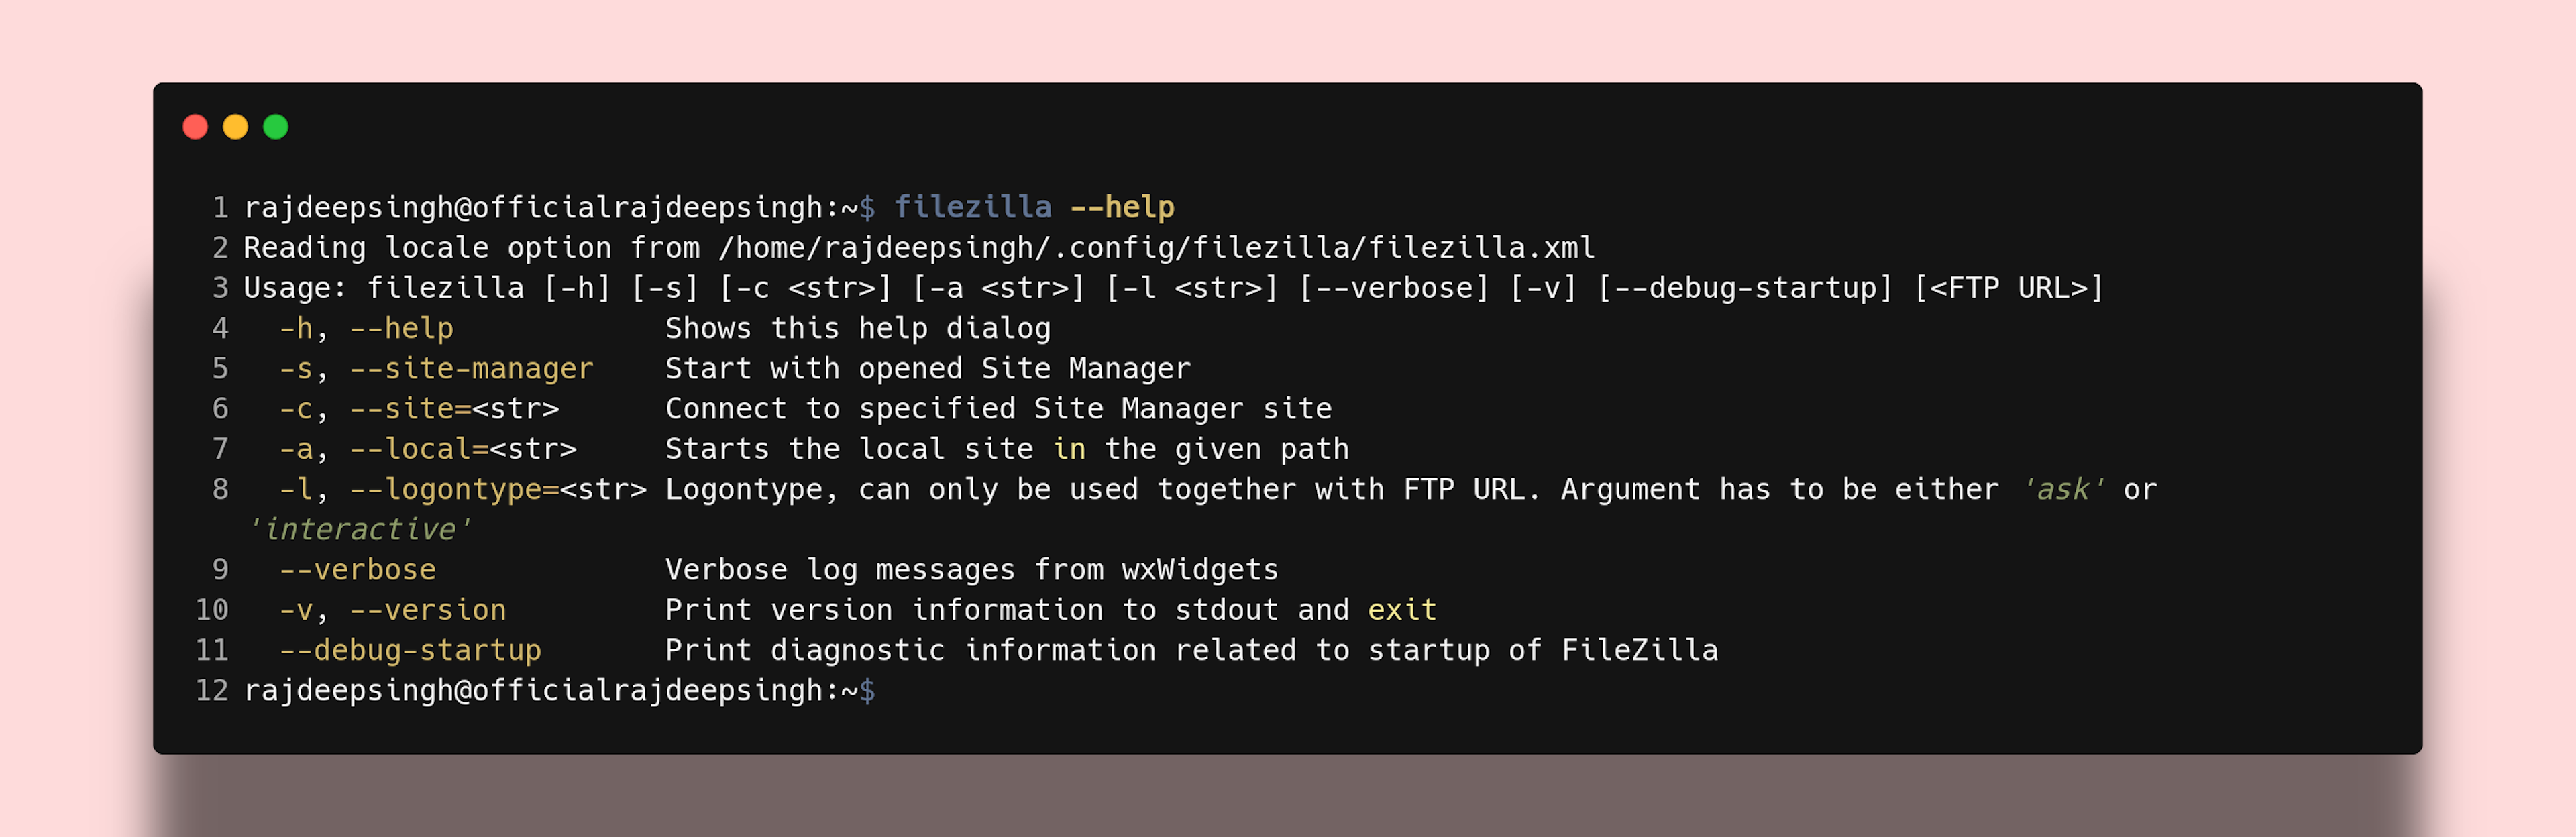 Filezilla help command output